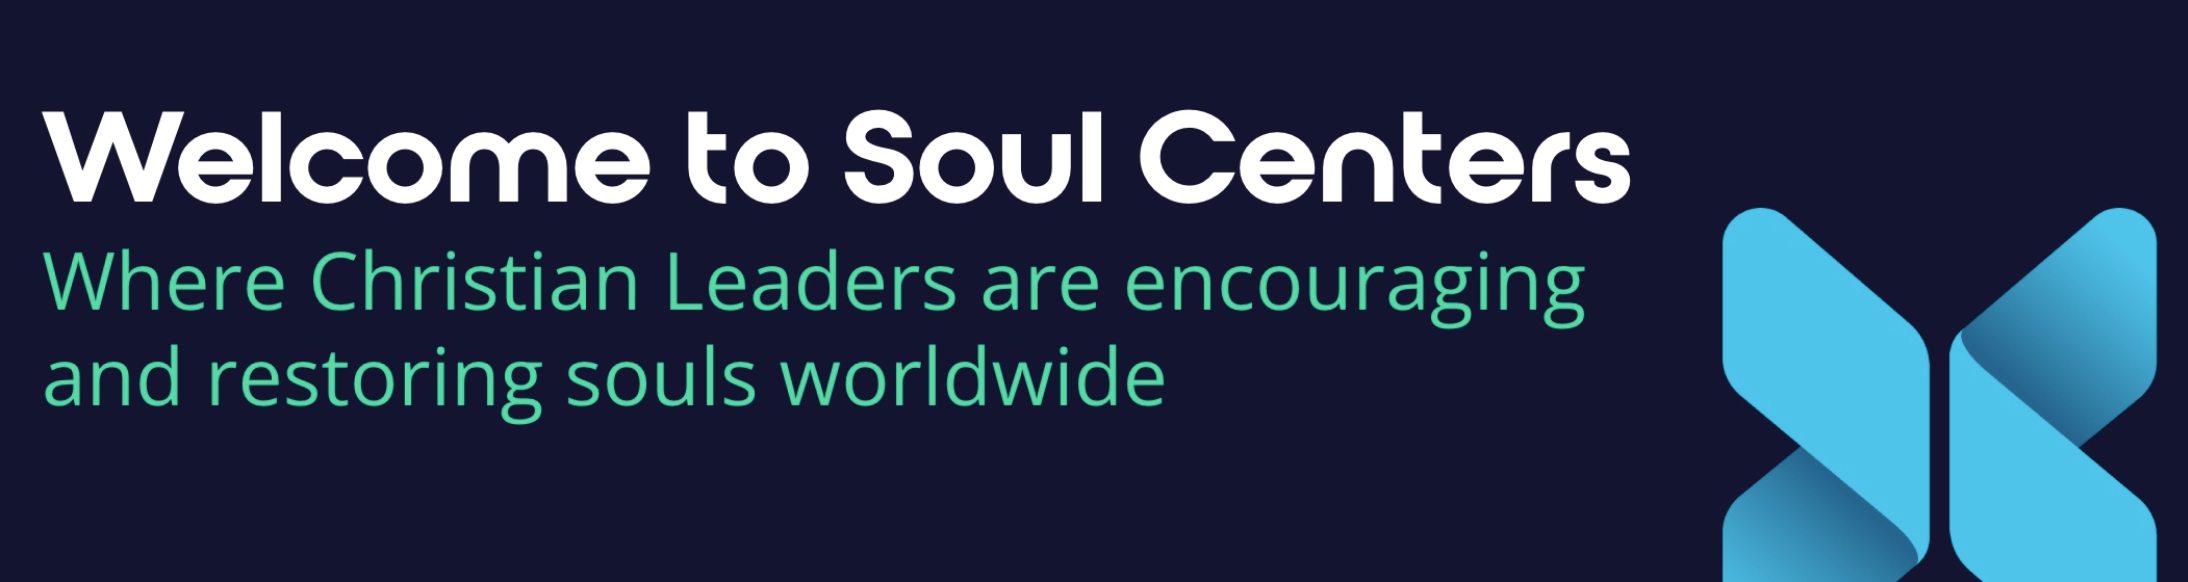 Soul Centers